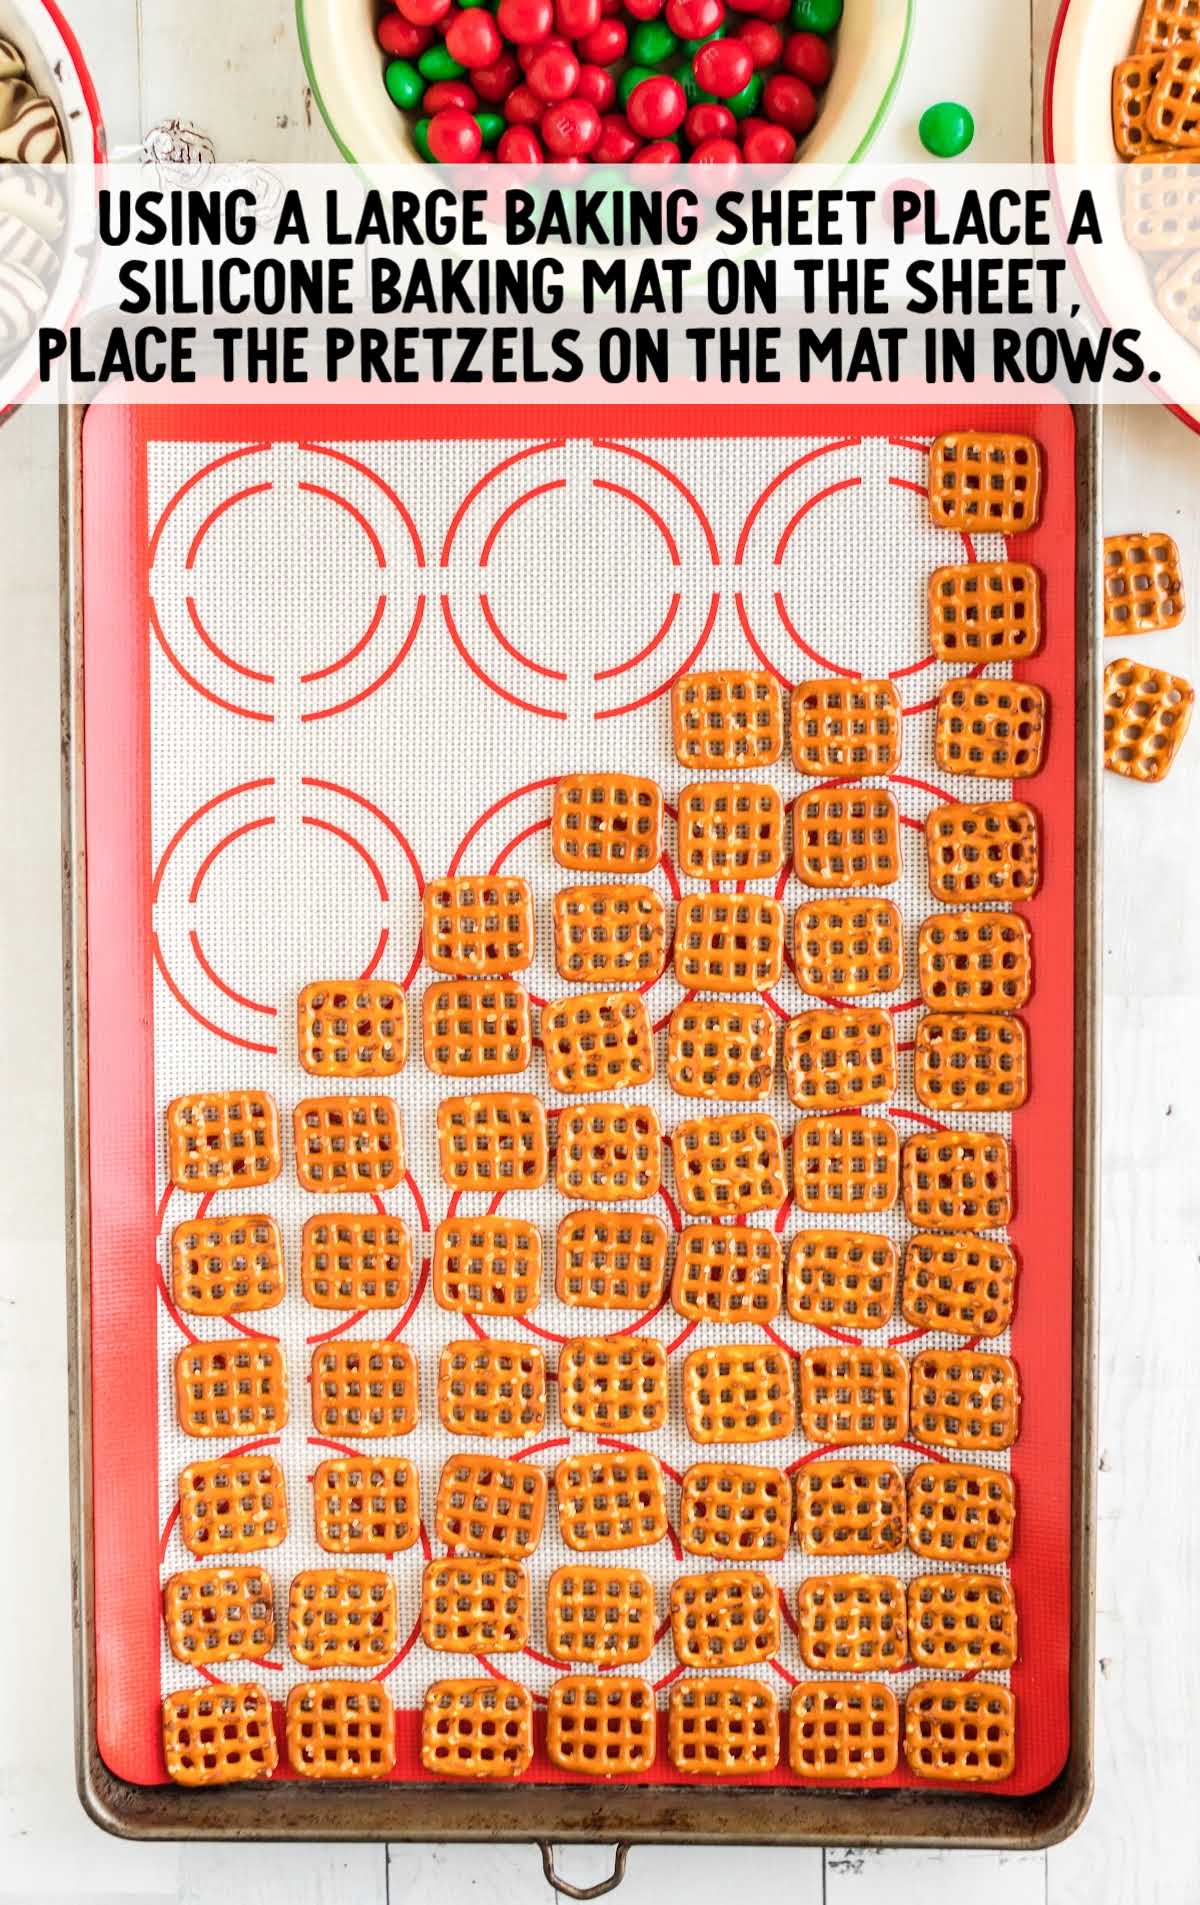 pretzels placed on a baking mat